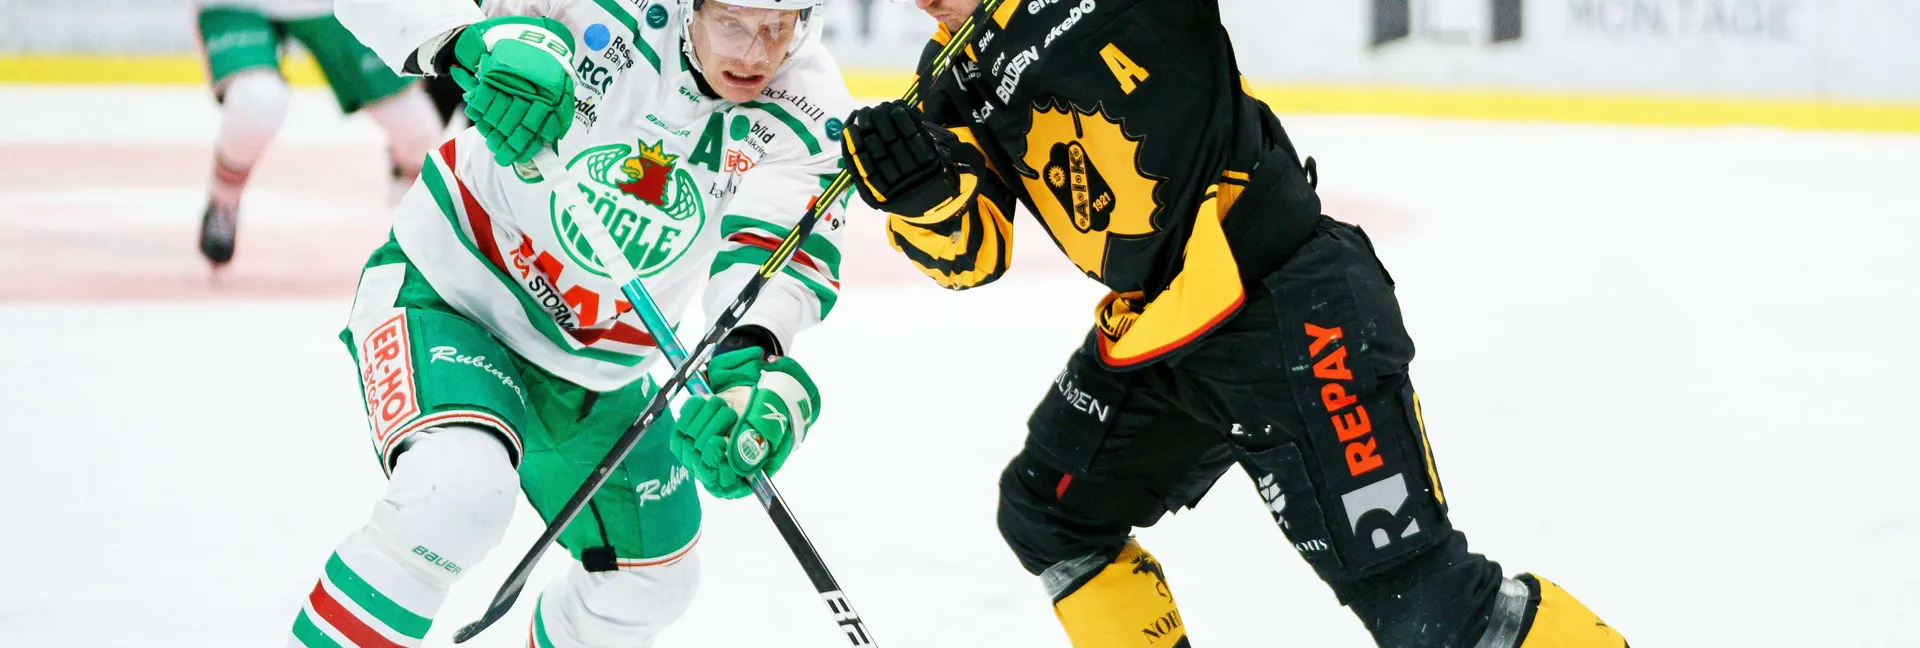 Ishockeymatch mellan Rögle och Skellefteå i SHL